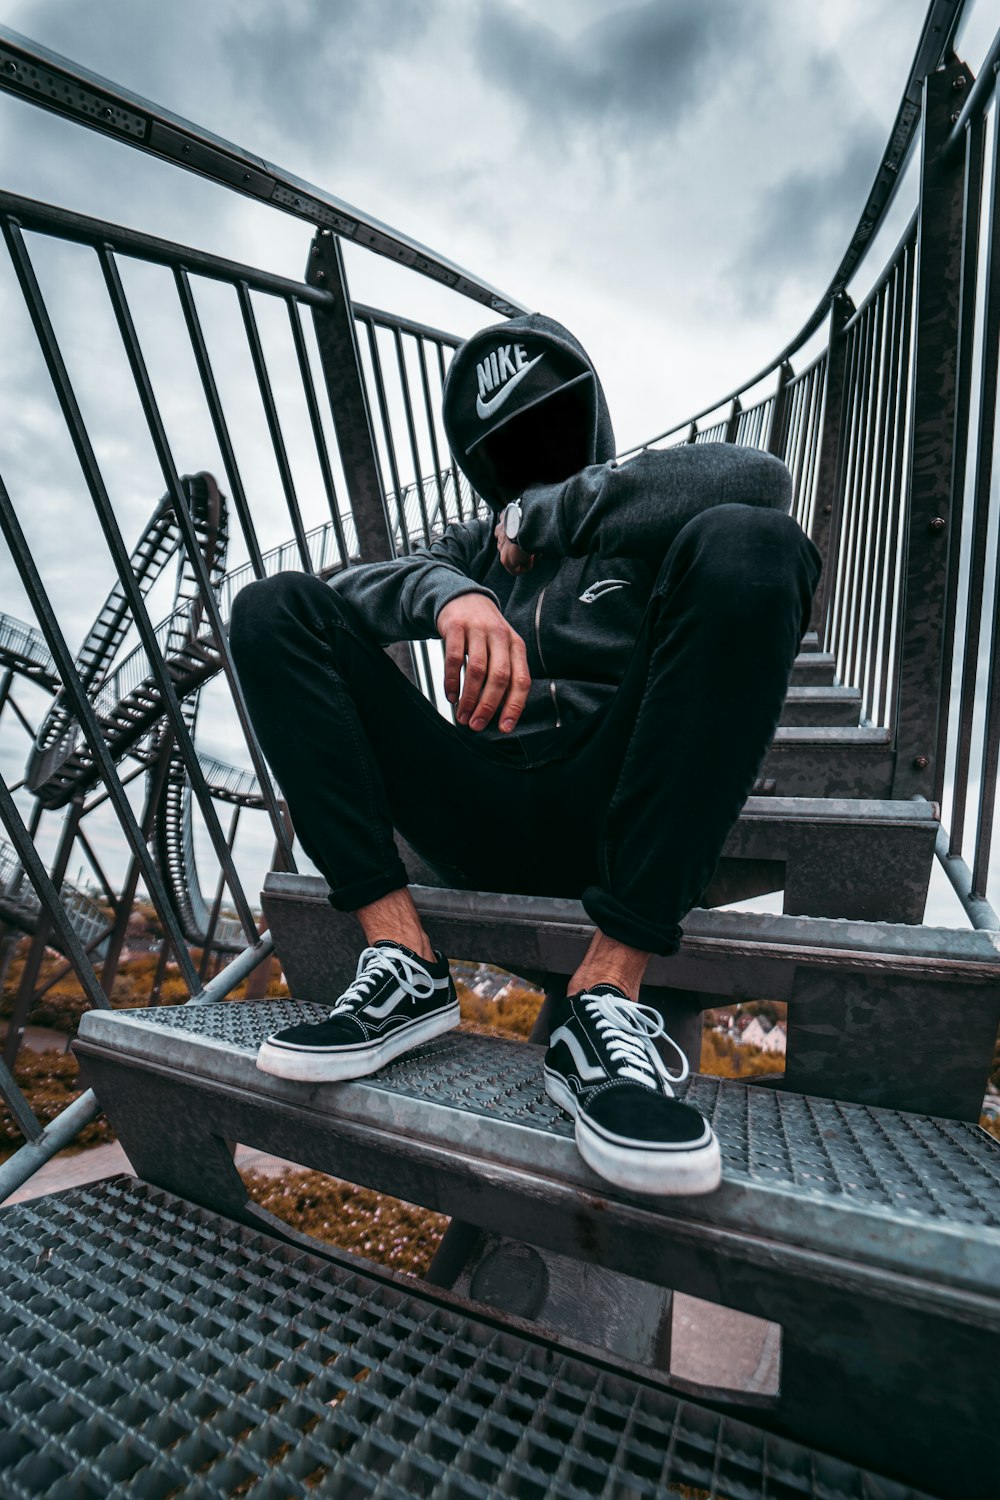 Mann in schwarzer Hose und schwarz-weißen Nike-Turnschuhen sitzt auf schwarzem Metallgeländer